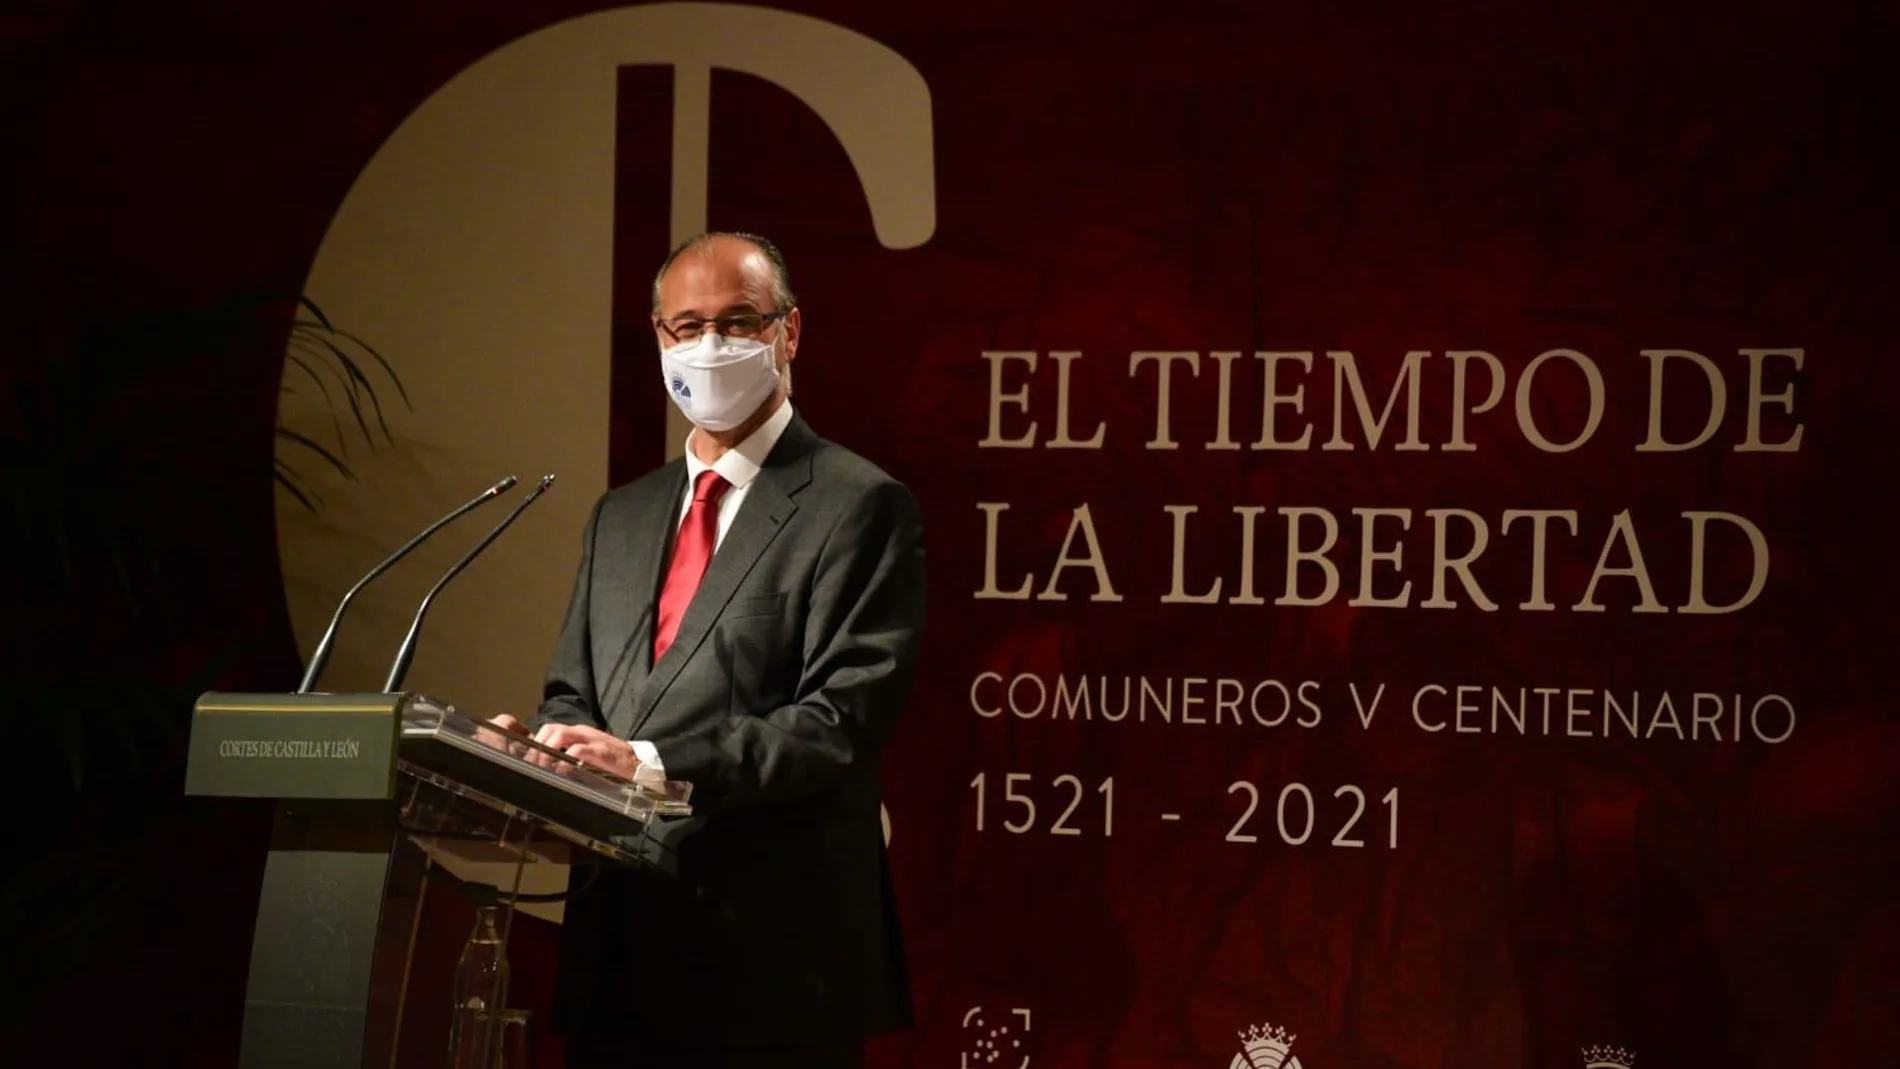 El presidente de las Cortes y de la Fundación de Castilla y León, Luis Fuentes, inaugura el pase previo de la exposición "Comuneros 500 años"